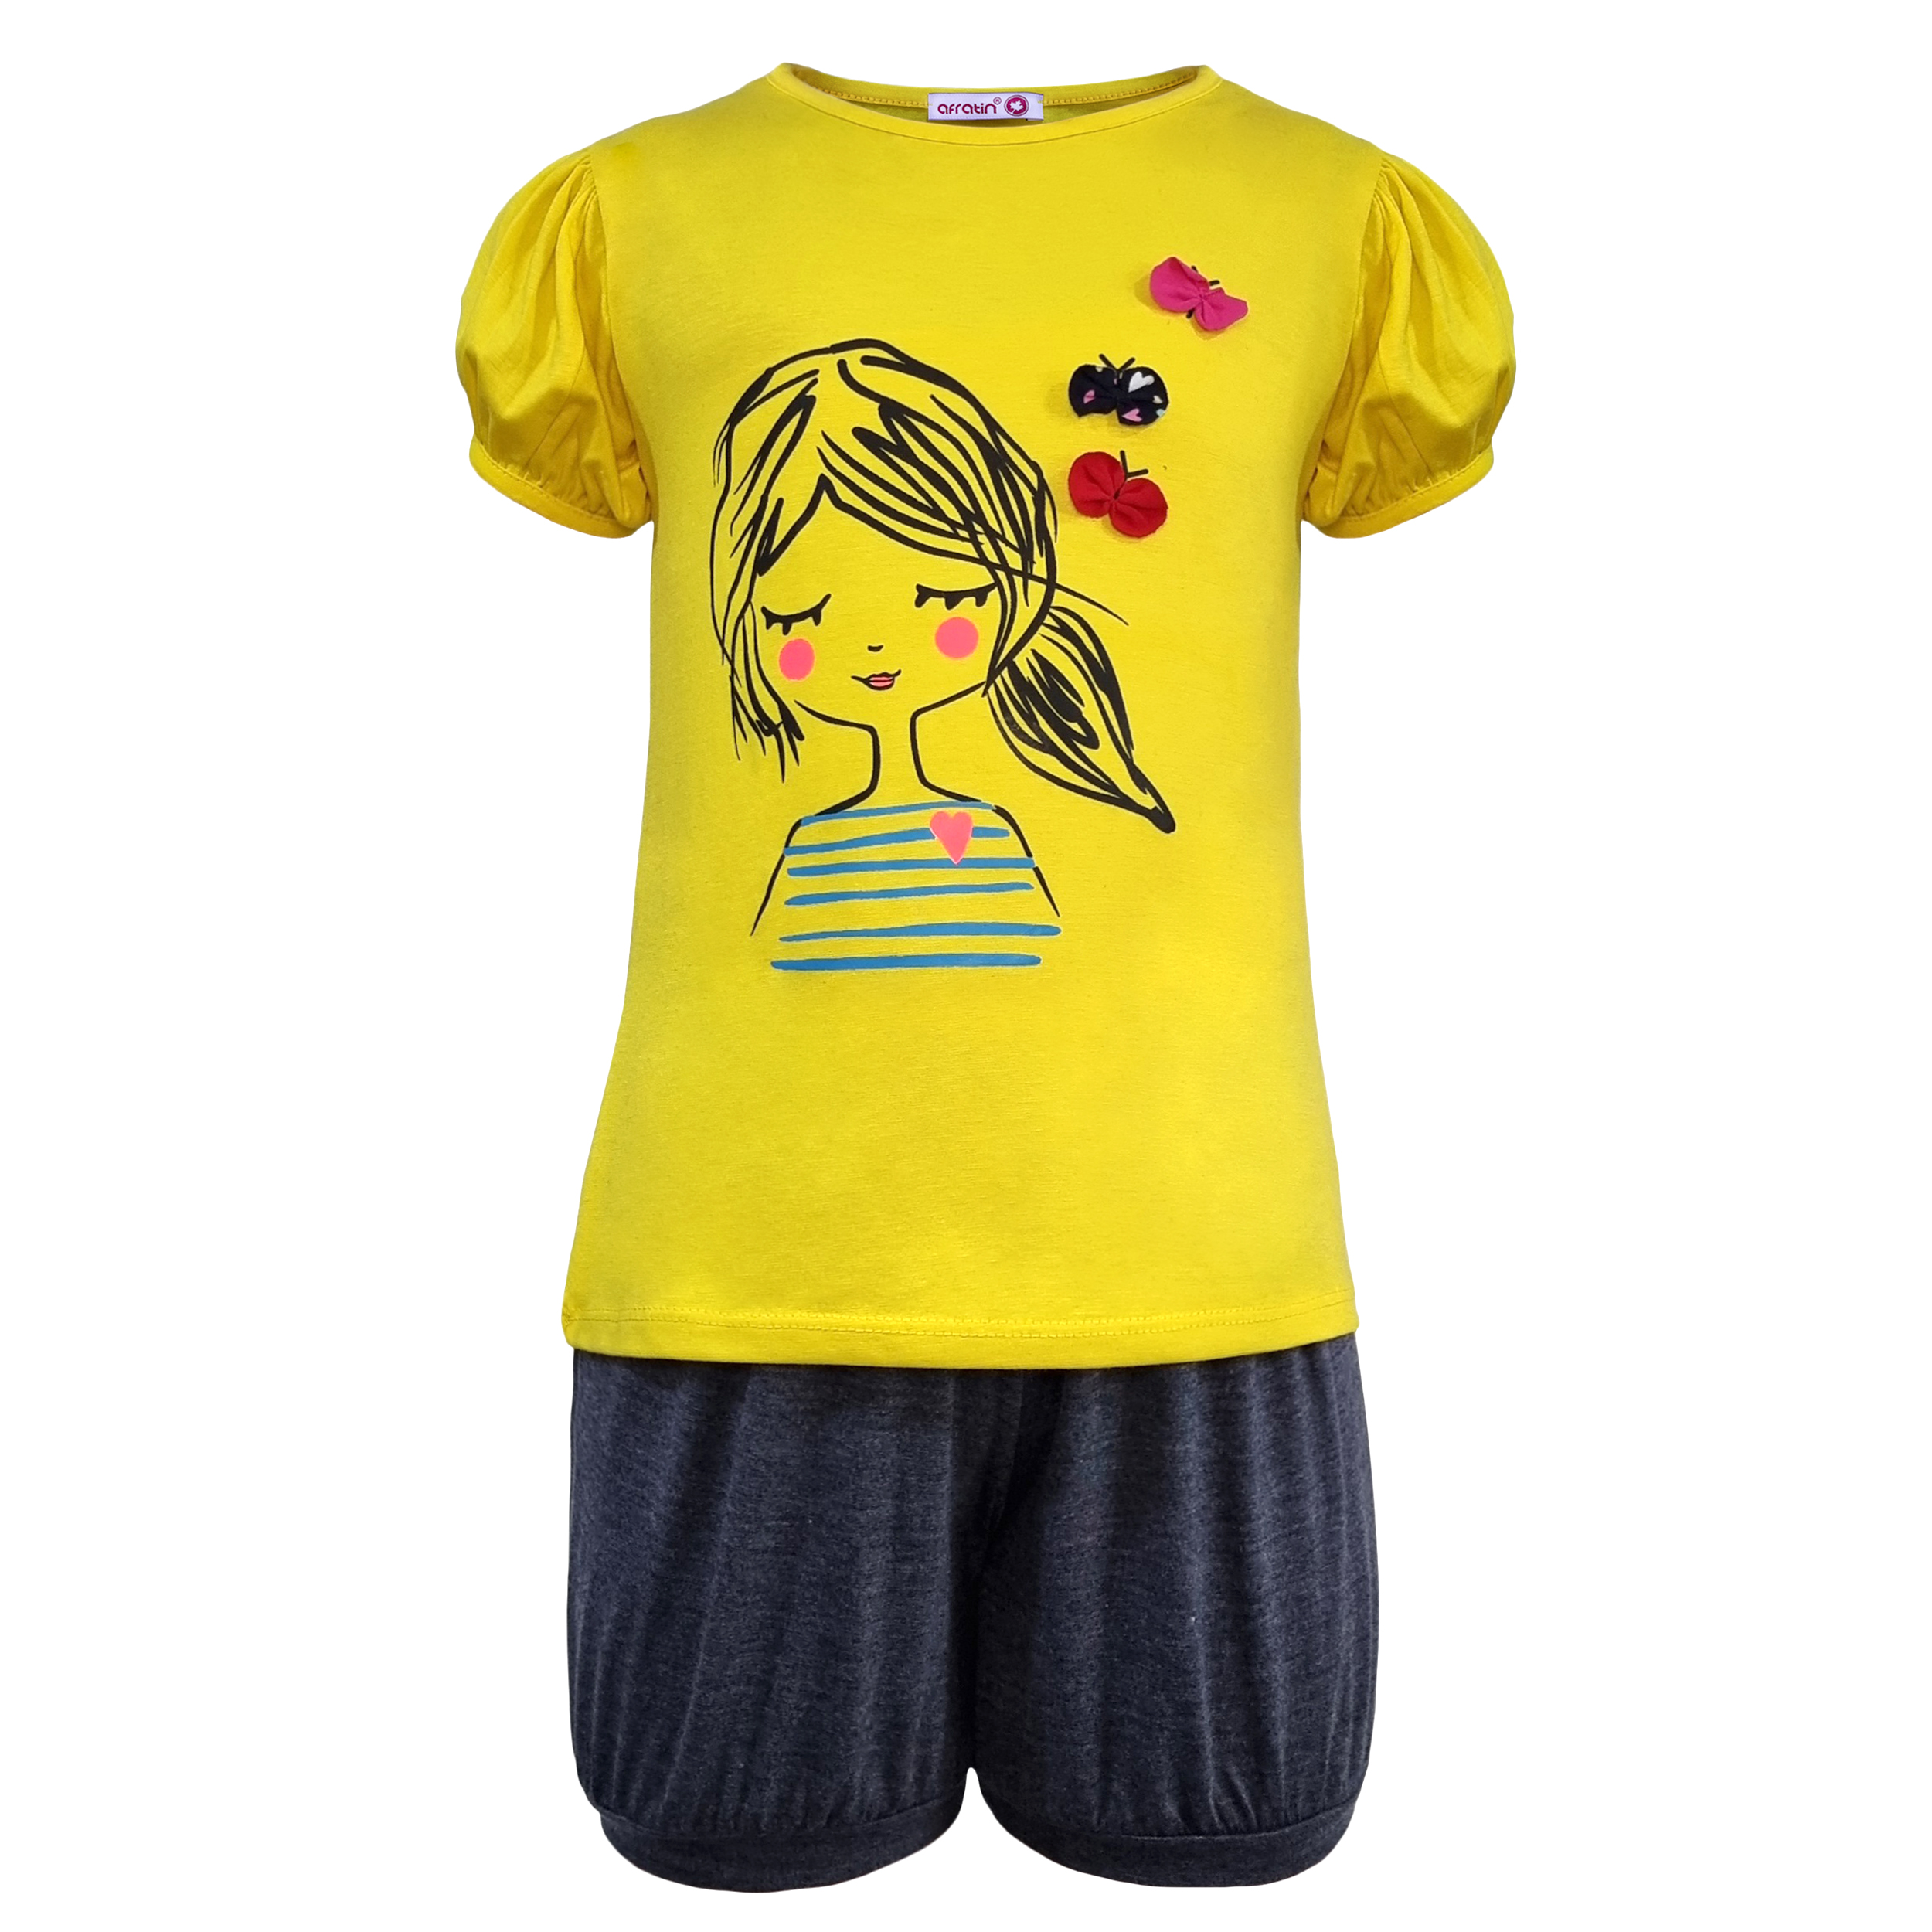 ست تی شرت و شلوارک دخترانه افراتین مدل دختر و پروانه رنگ زرد